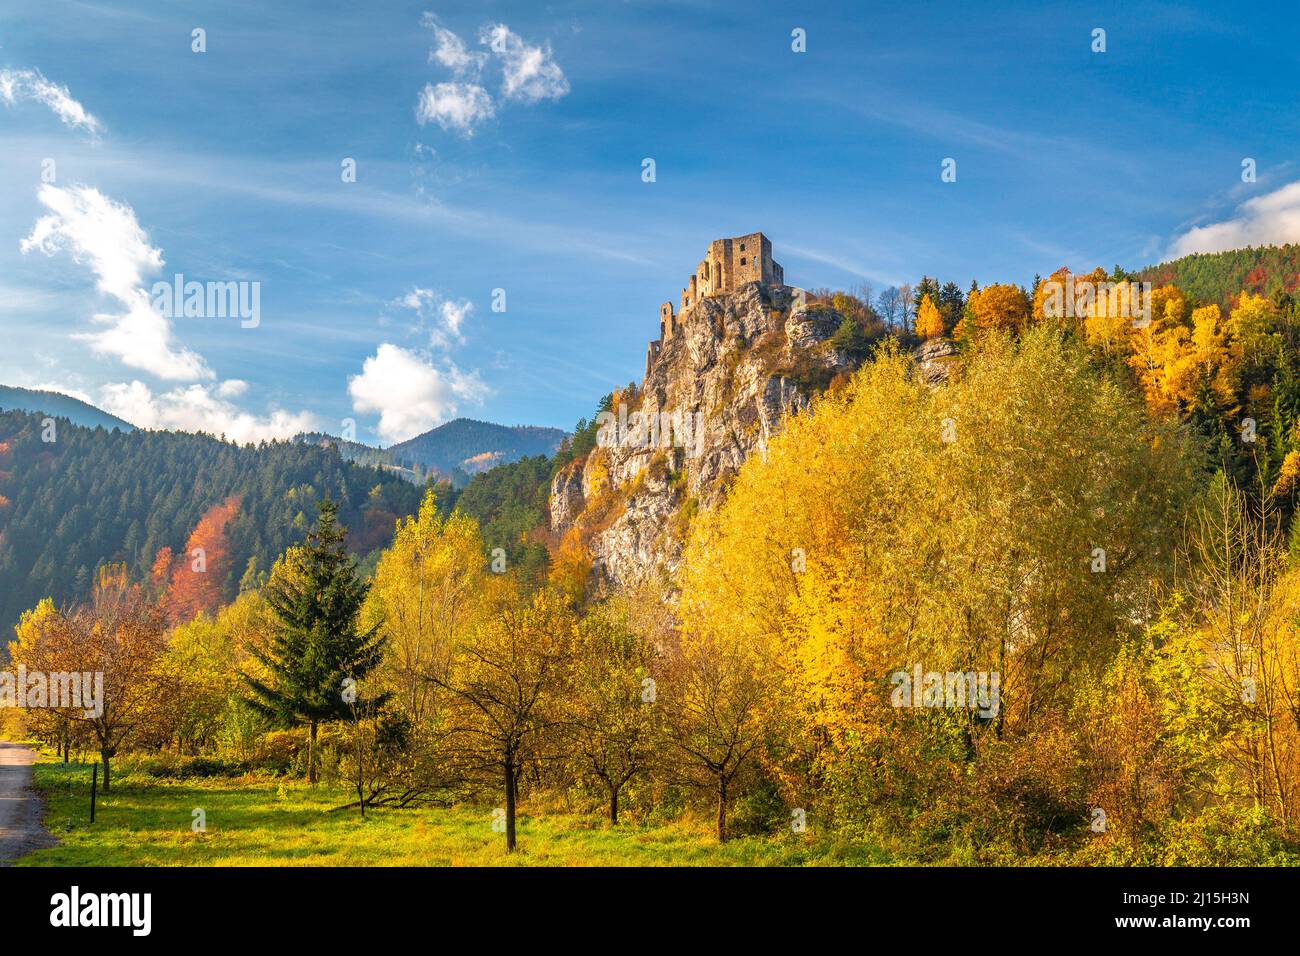 Château médiéval de Strecno dans le paysage de montagne d'automne, Slovaquie, Europe. Banque D'Images